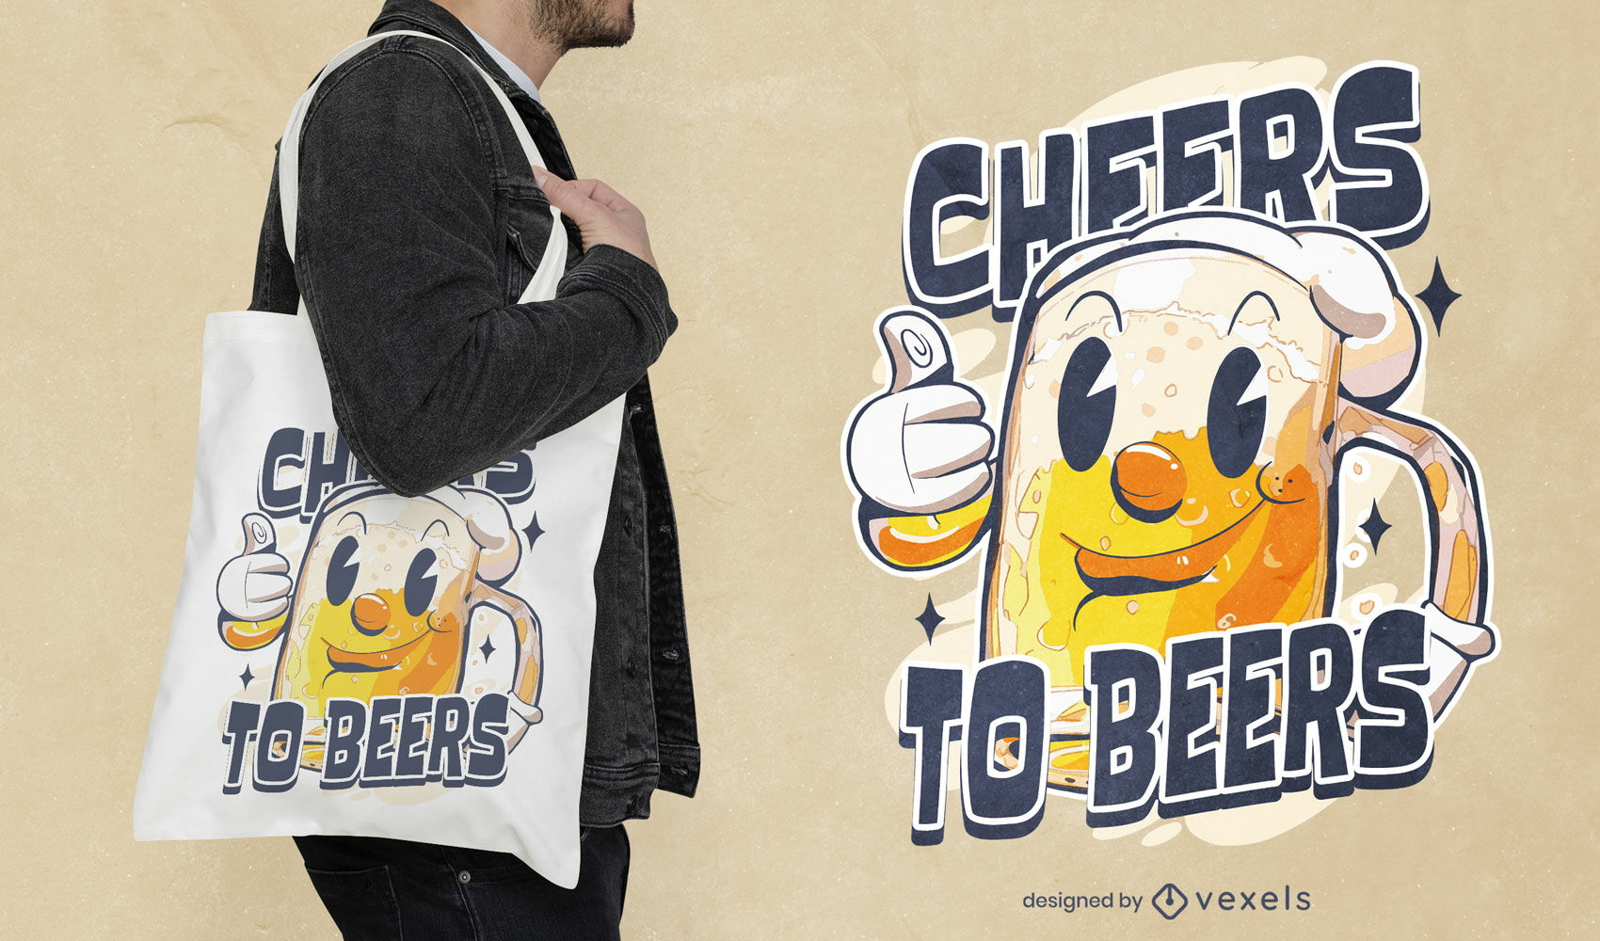 Cheers to beers cartoon tote bag design